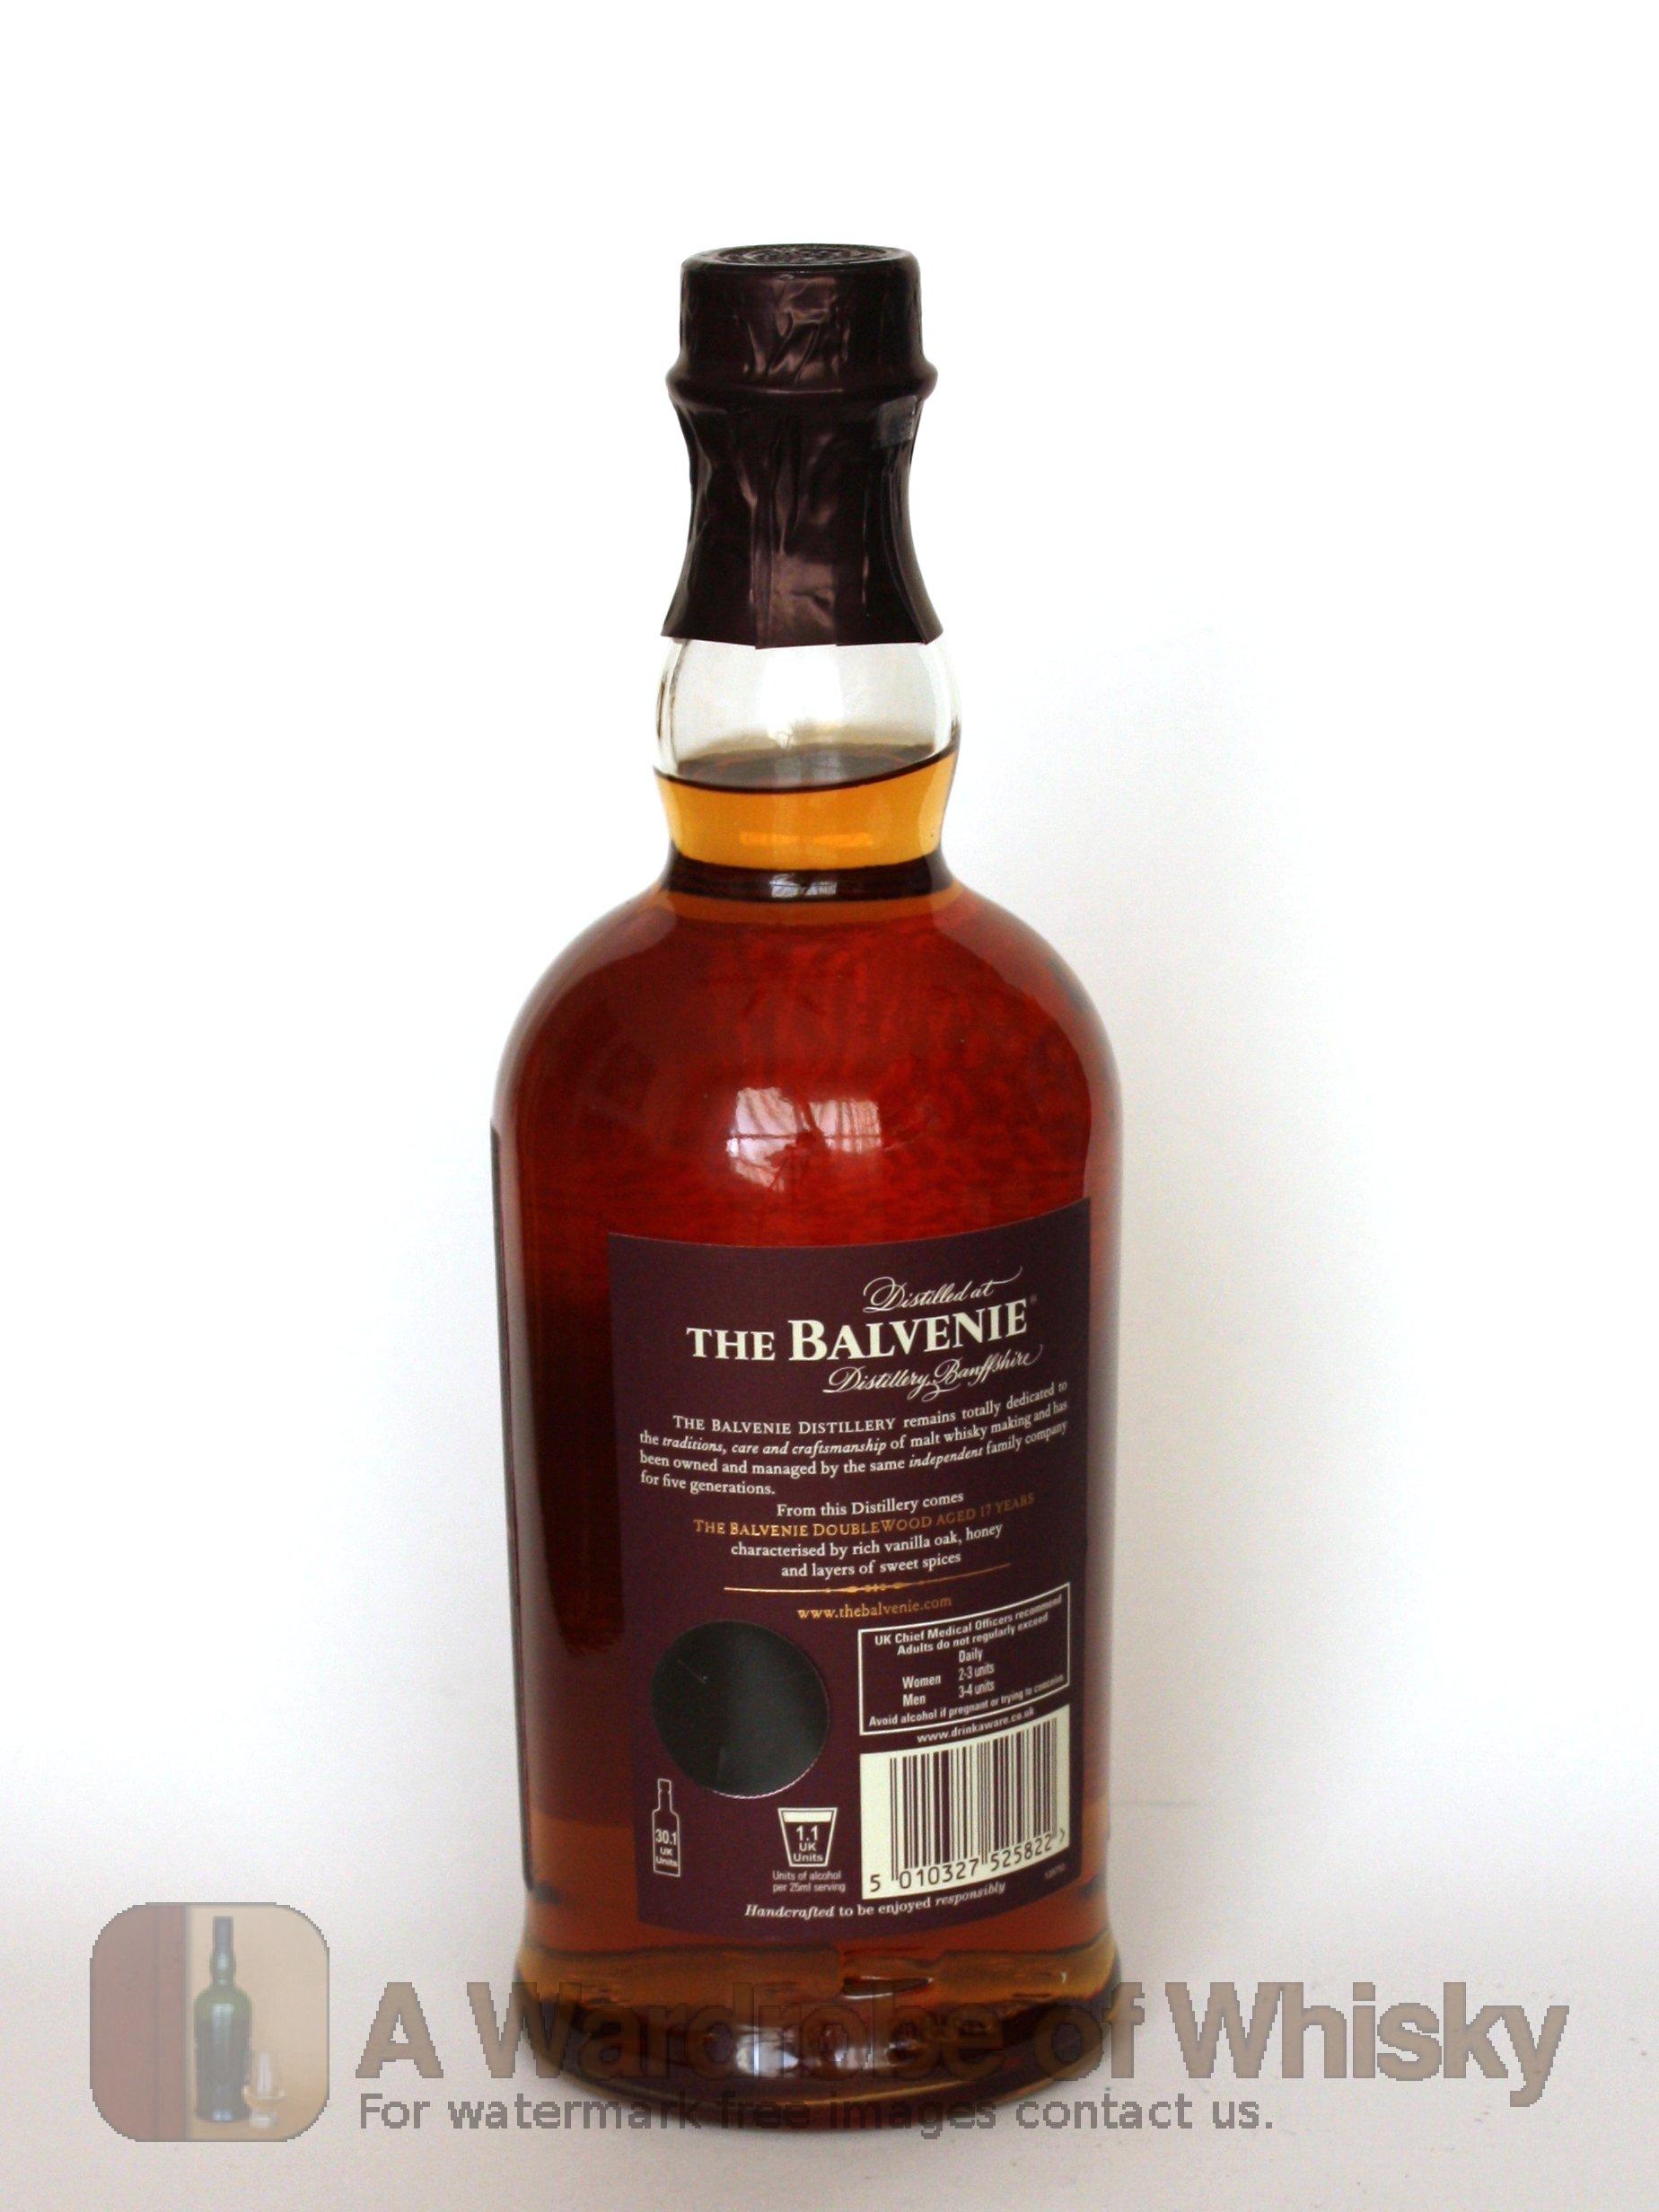 Balvenie single malt scotch reviews